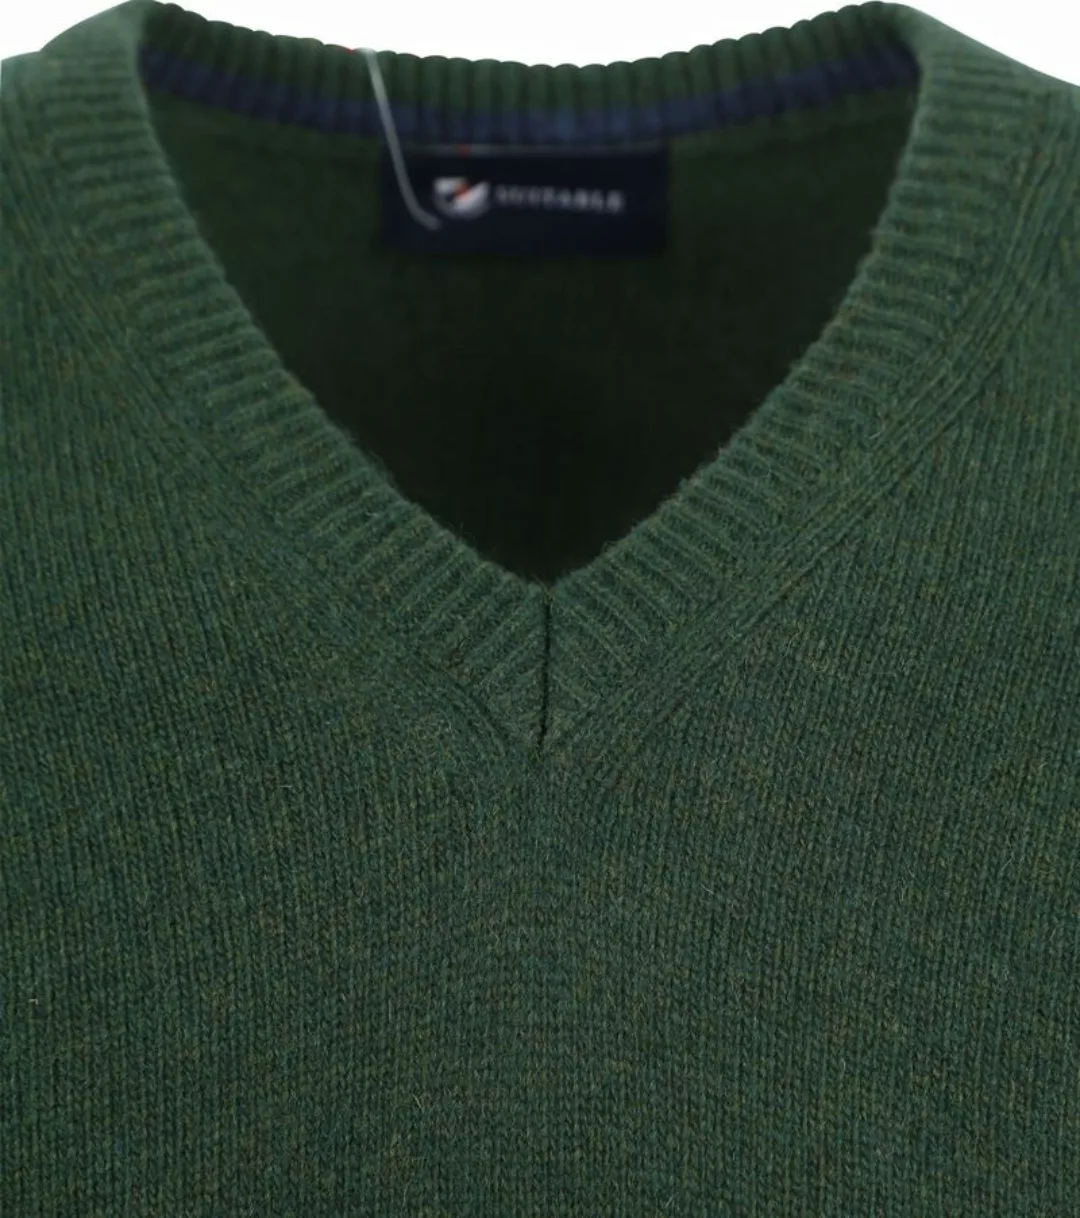 Suitable Lammwolle Pullover V-Ausschnitt Dunkelgrün - Größe M günstig online kaufen